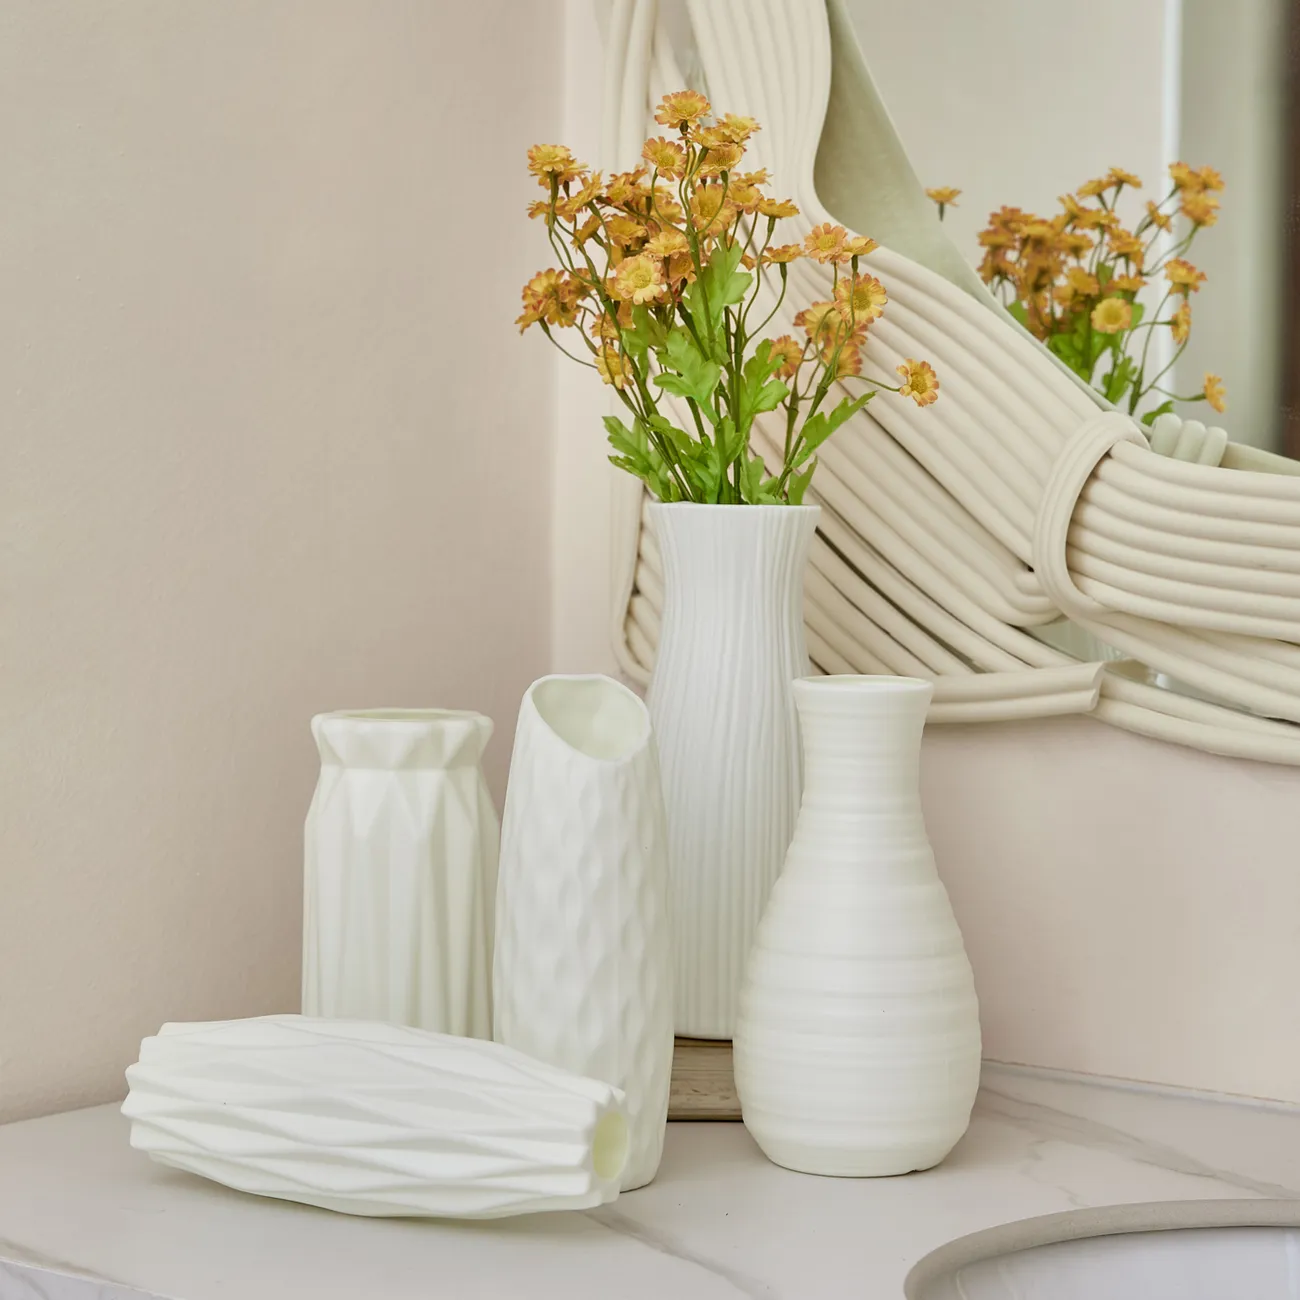 Keramik-Look weiße Kunststoff-Blumenvase im geometrischen Stil unzerbrechliche Dekorvase für Blumen-Home-Office-Tischdekoration weiß big image 1